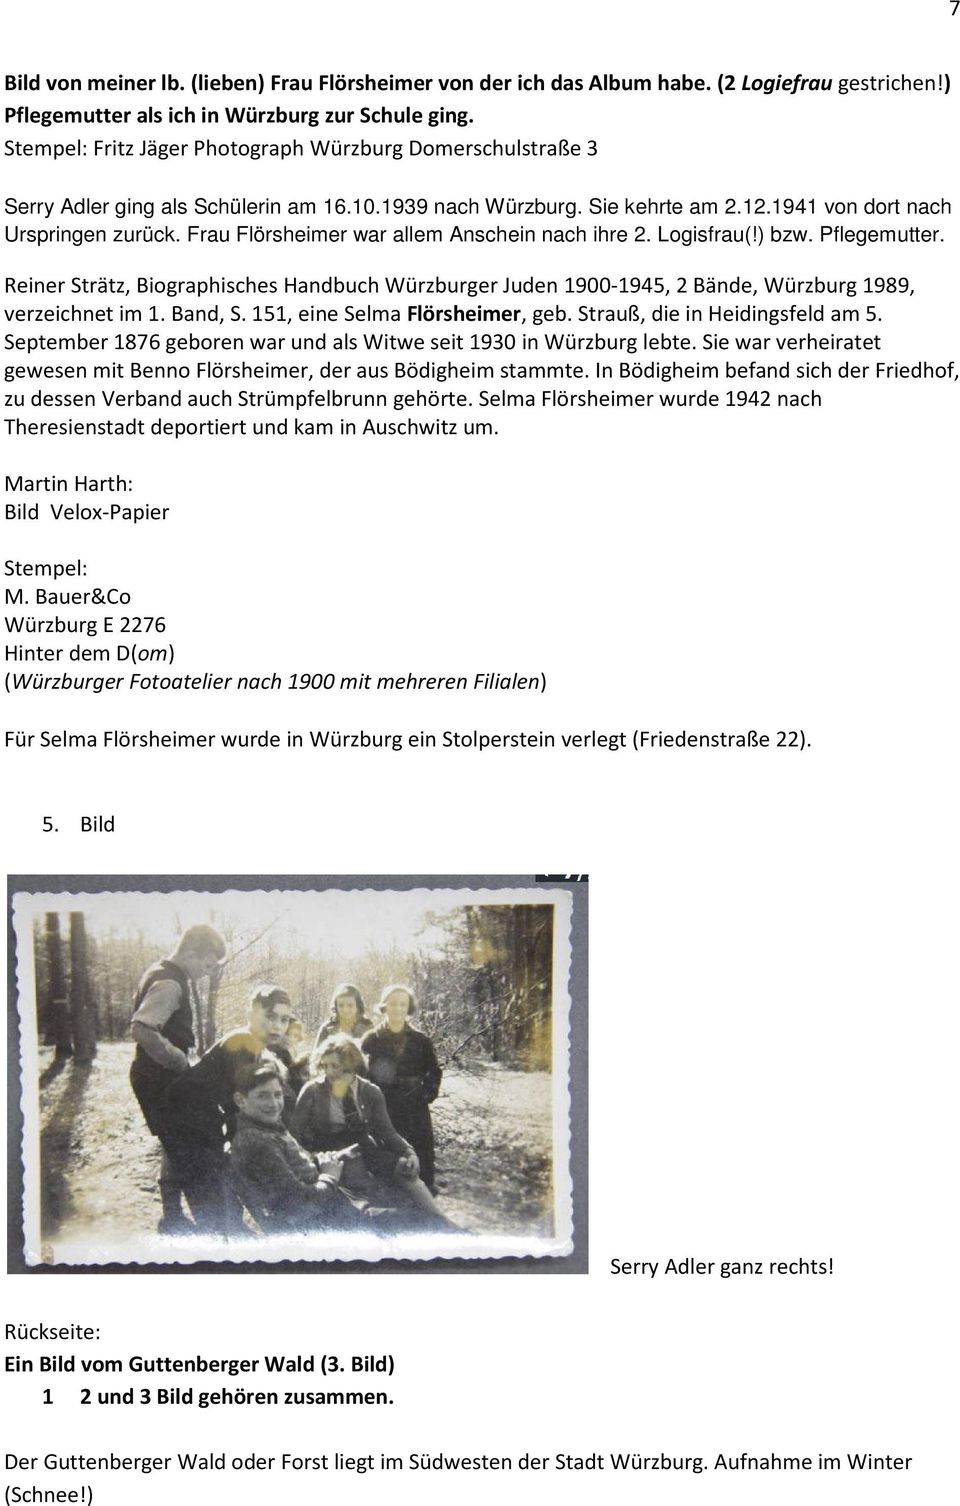 Frau Flörsheimer war allem Anschein nach ihre 2. Logisfrau(!) bzw. Pflegemutter. Reiner Strätz, Biographisches Handbuch Würzburger Juden 1900-1945, 2 Bände, Würzburg 1989, verzeichnet im 1. Band, S.